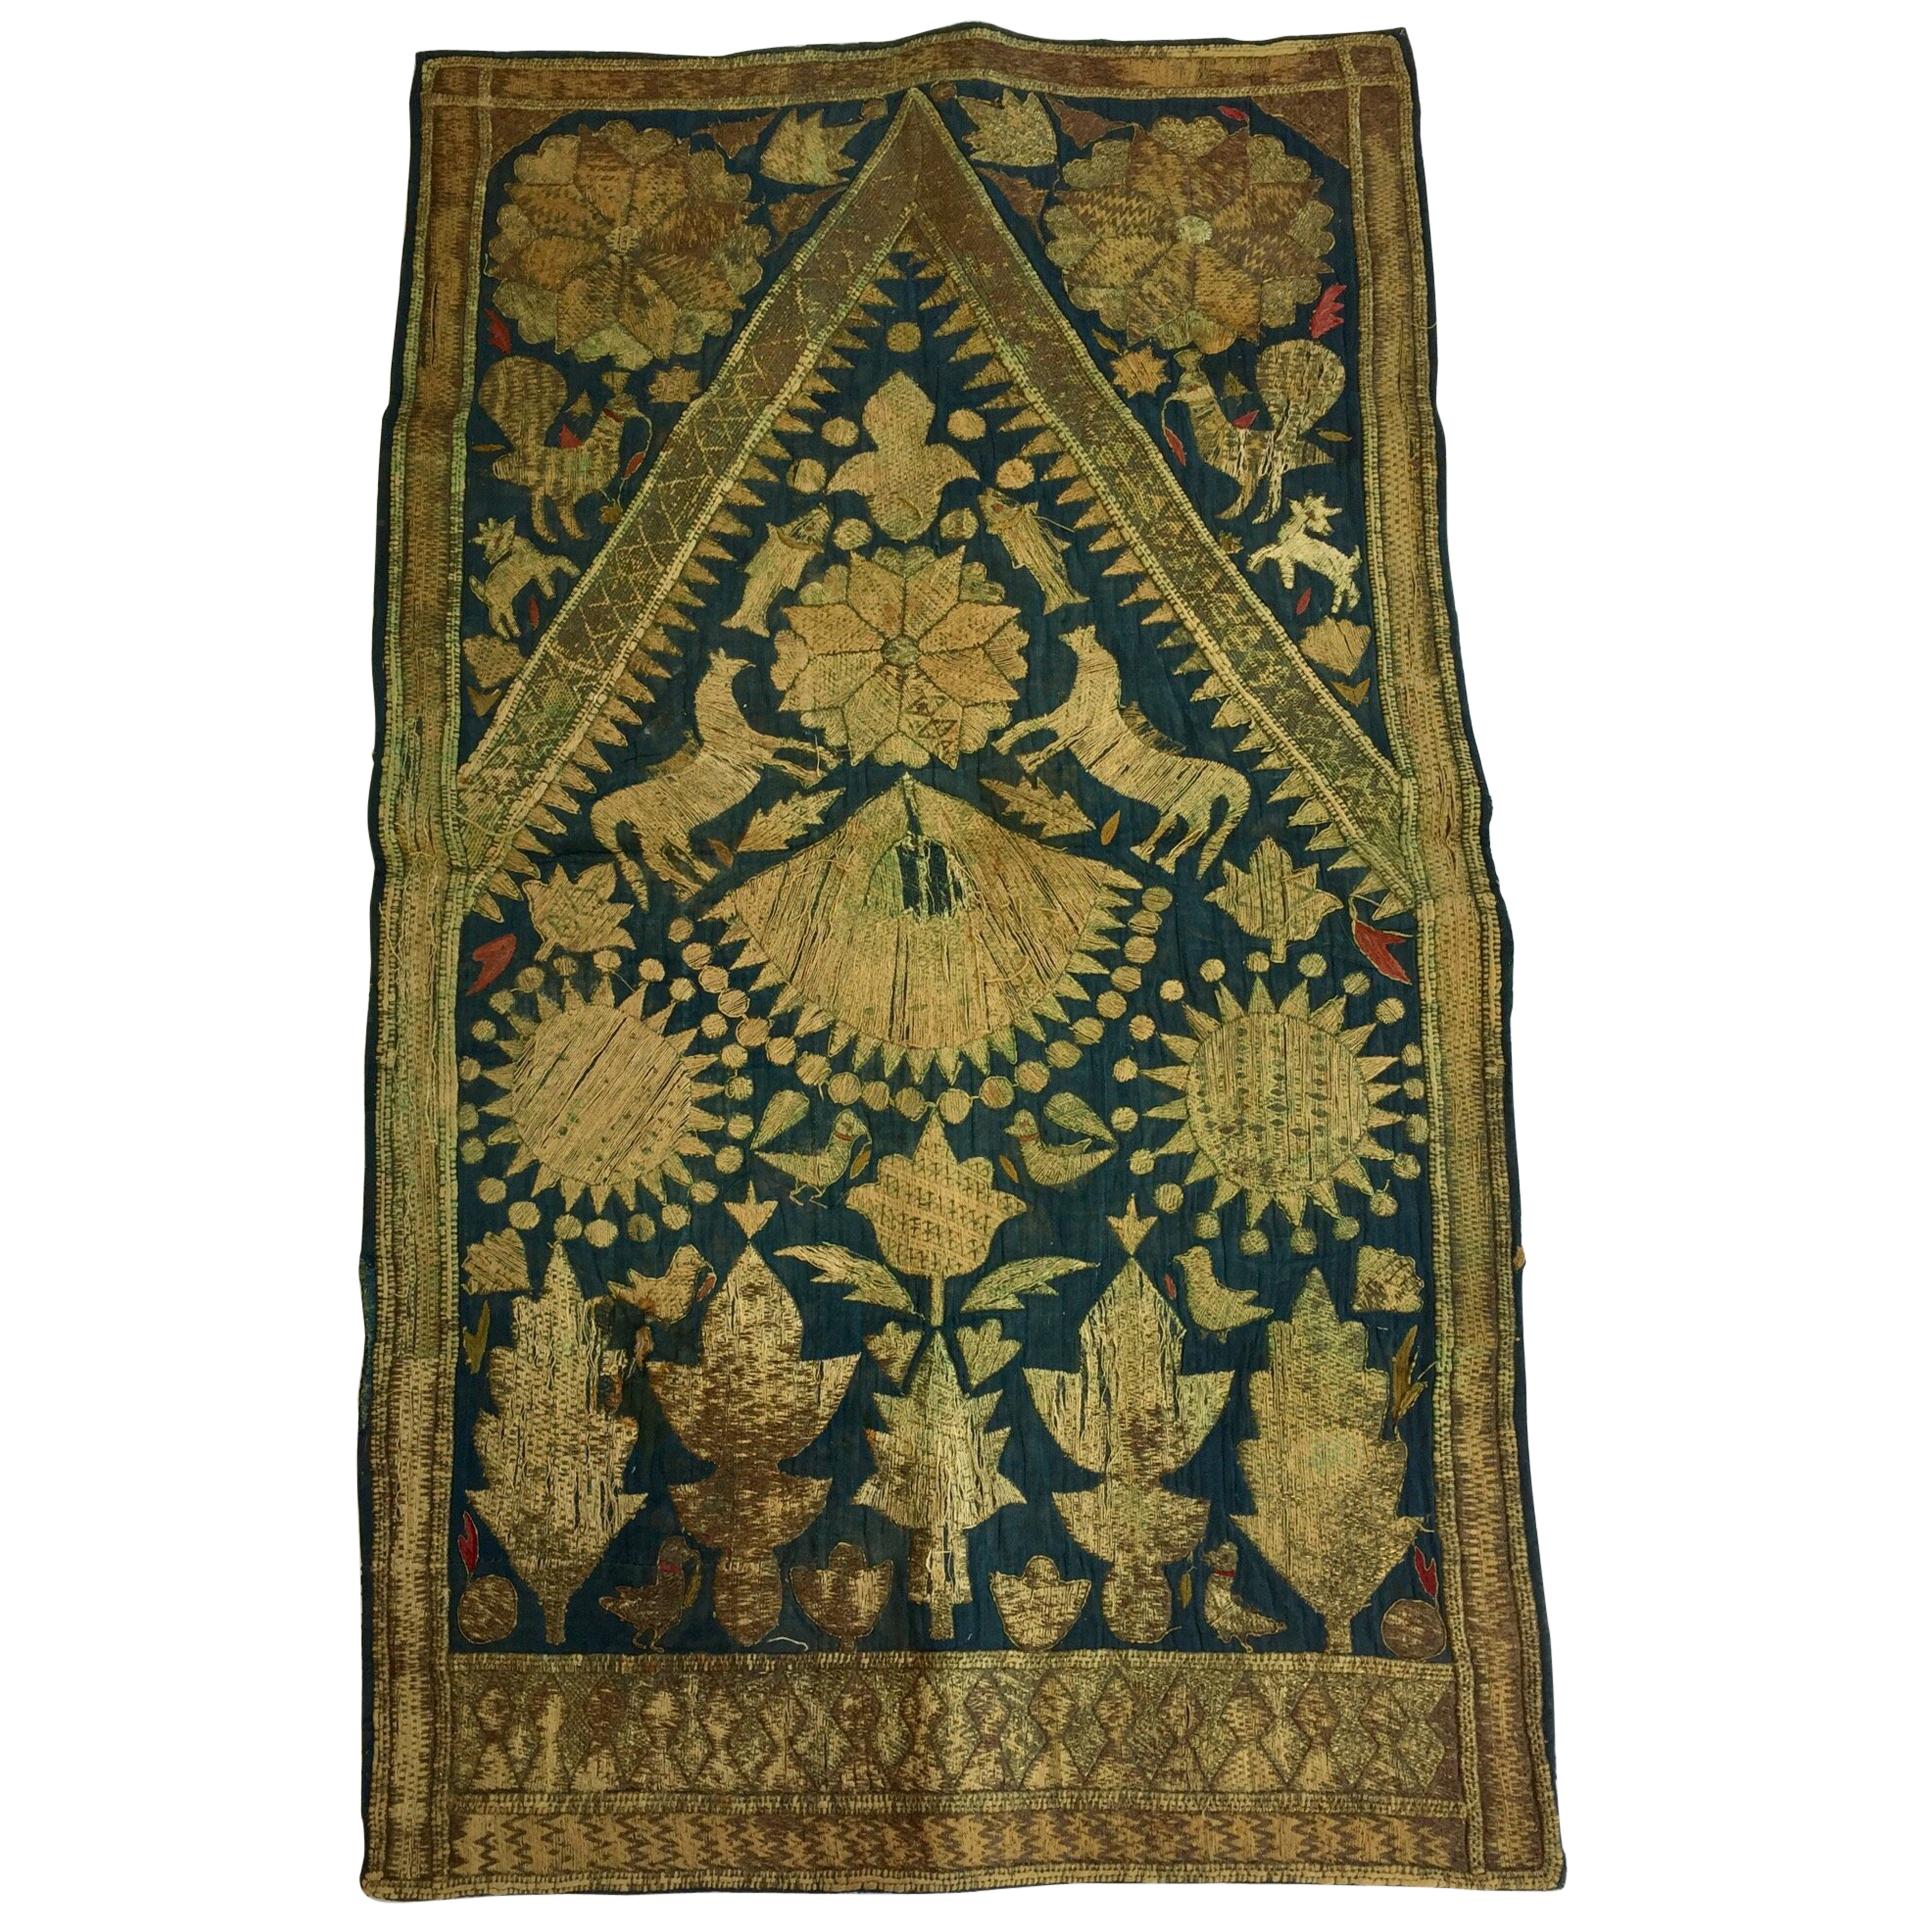 19th Century Moorish Islamic Ottoman Empire Textile Metallic Embroidered